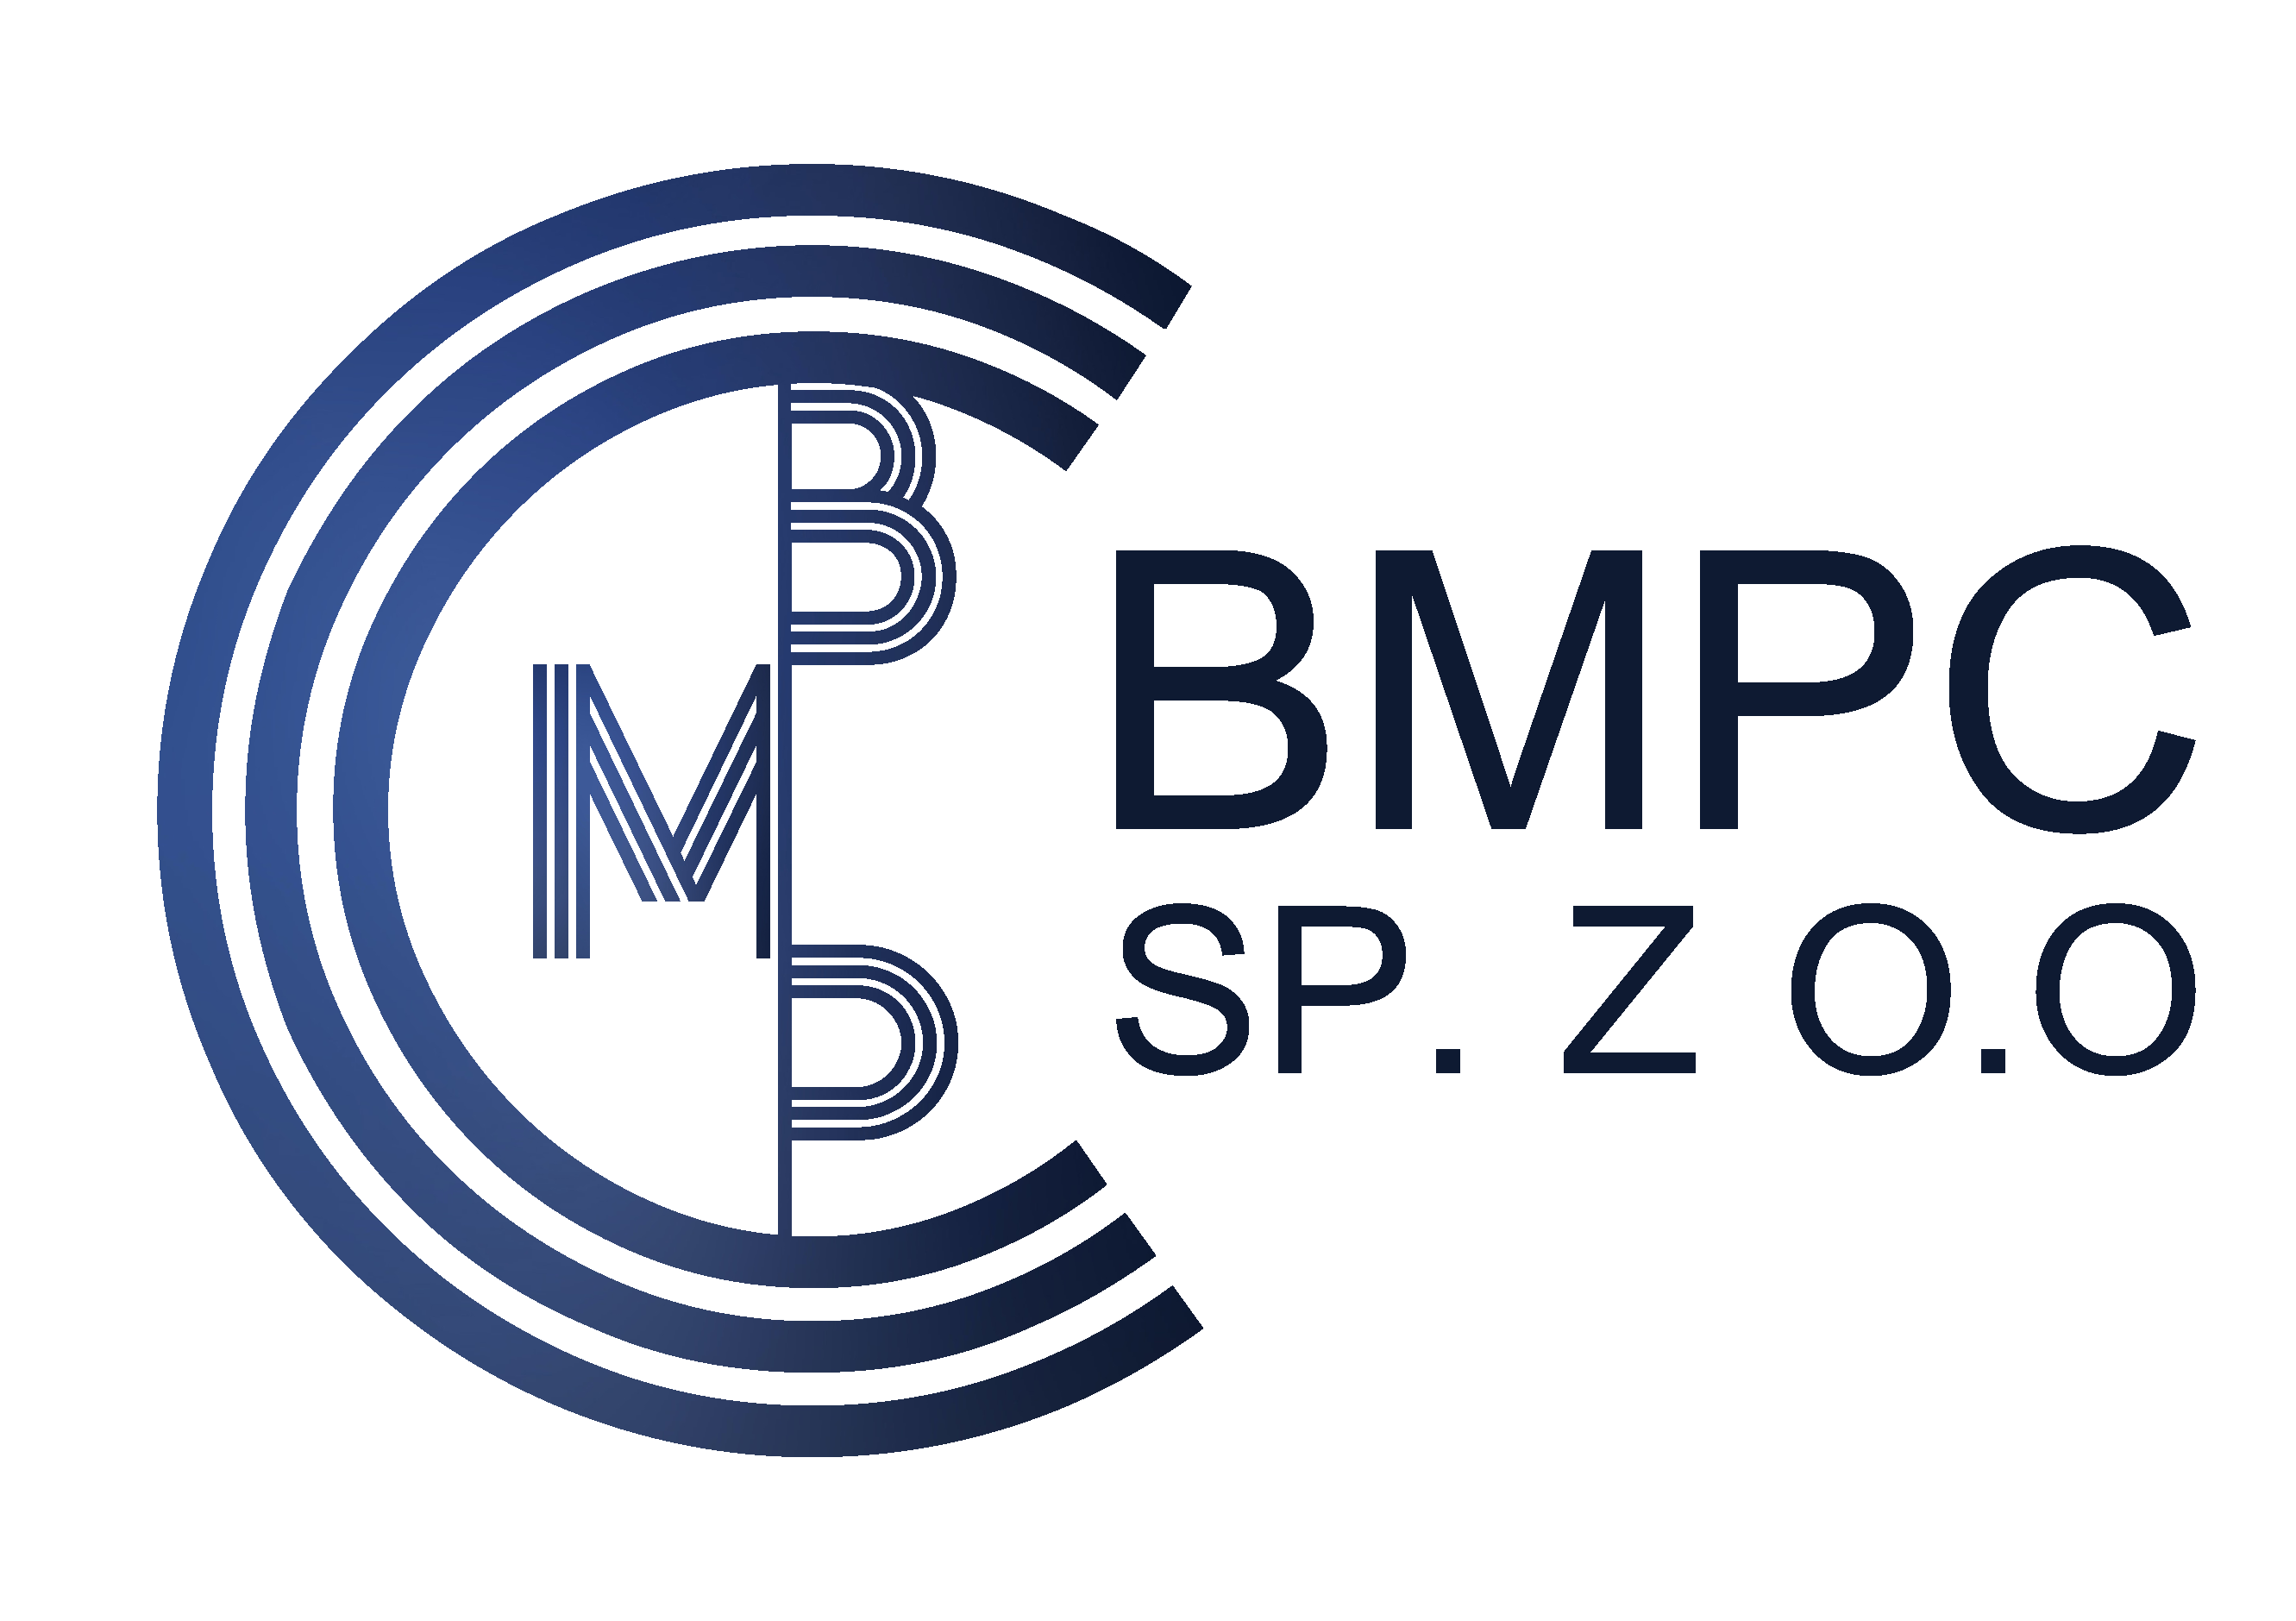 BMPC SP.Z.O.O